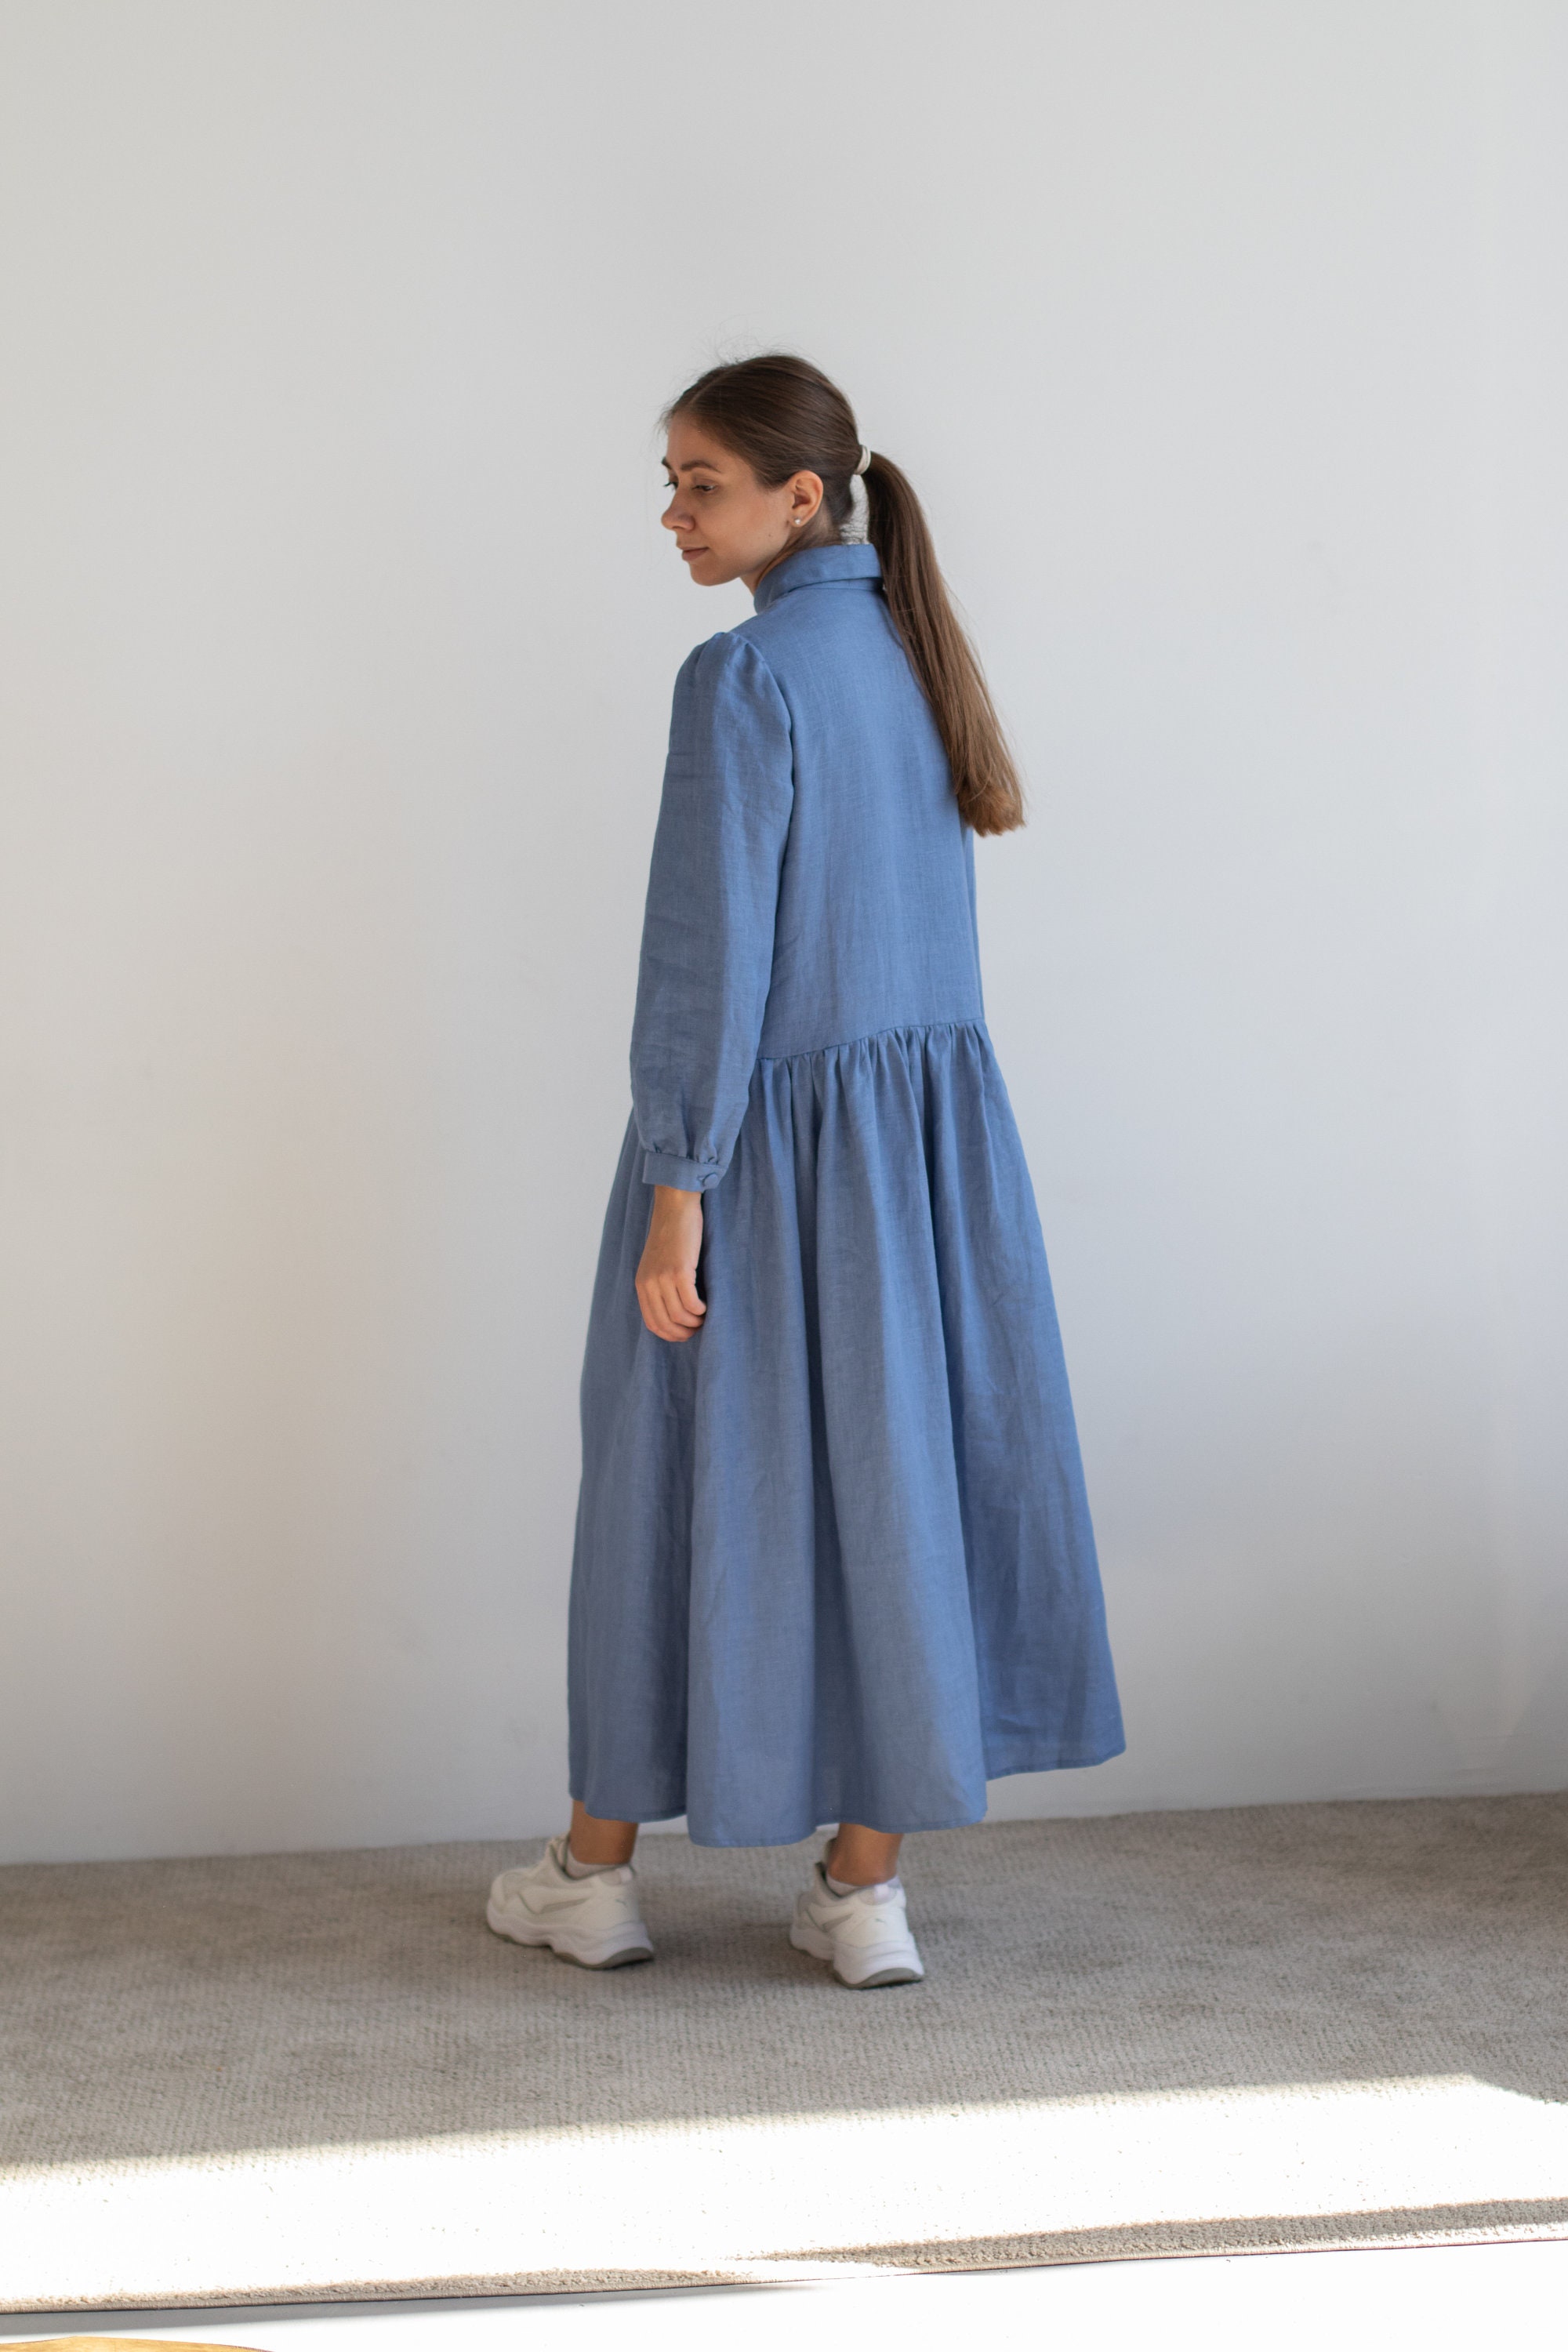 Linen Dress With Pockets Maxi Blue Boho Dress Long Sleeve - Etsy